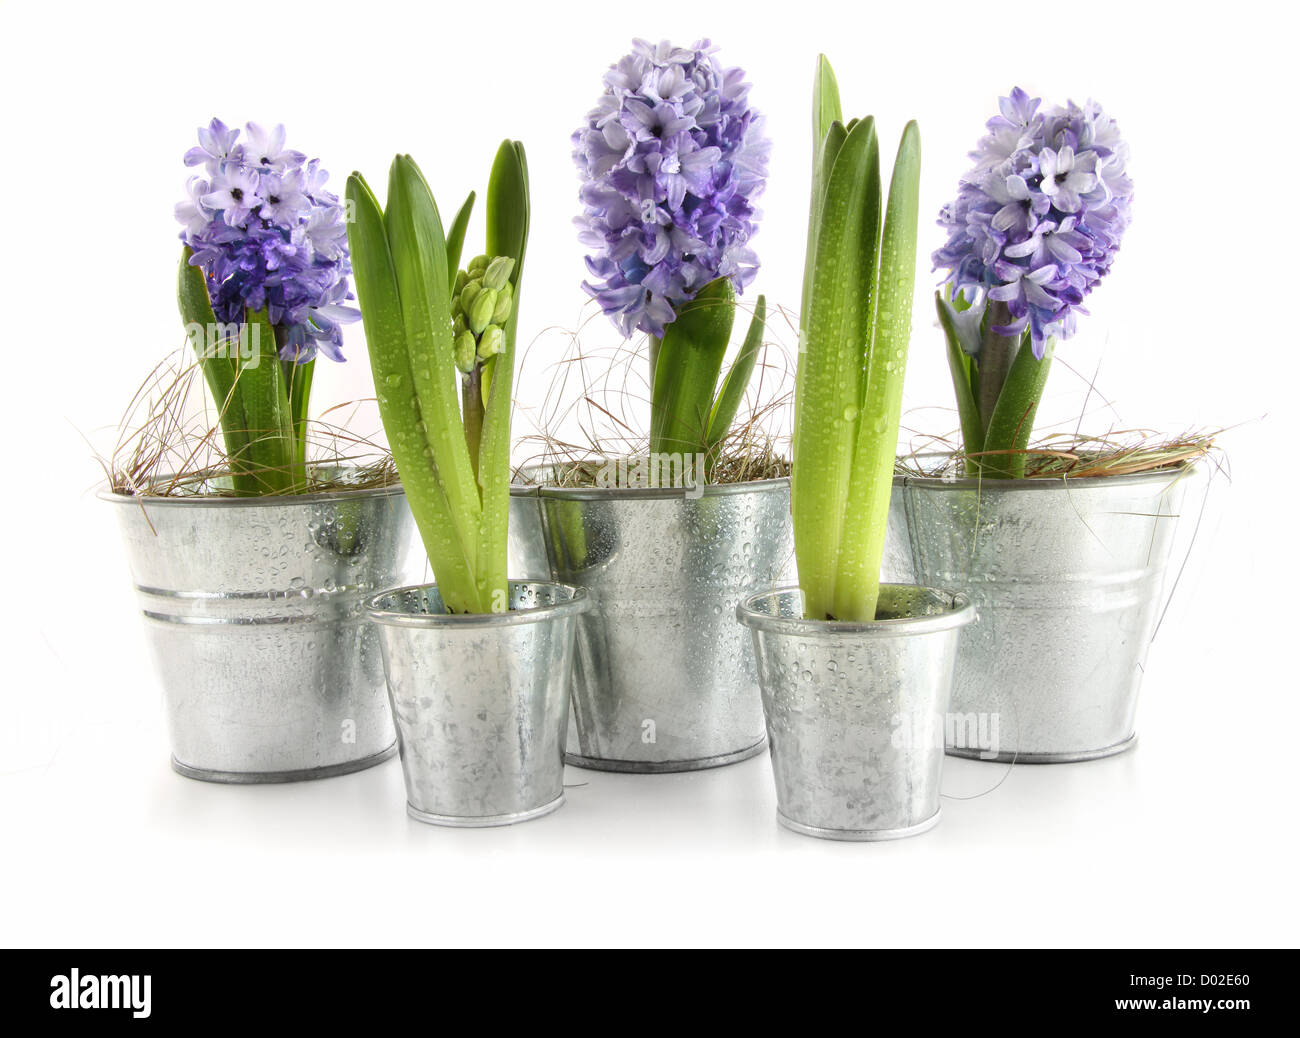 Purple hyacinth Banque d'images détourées - Alamy